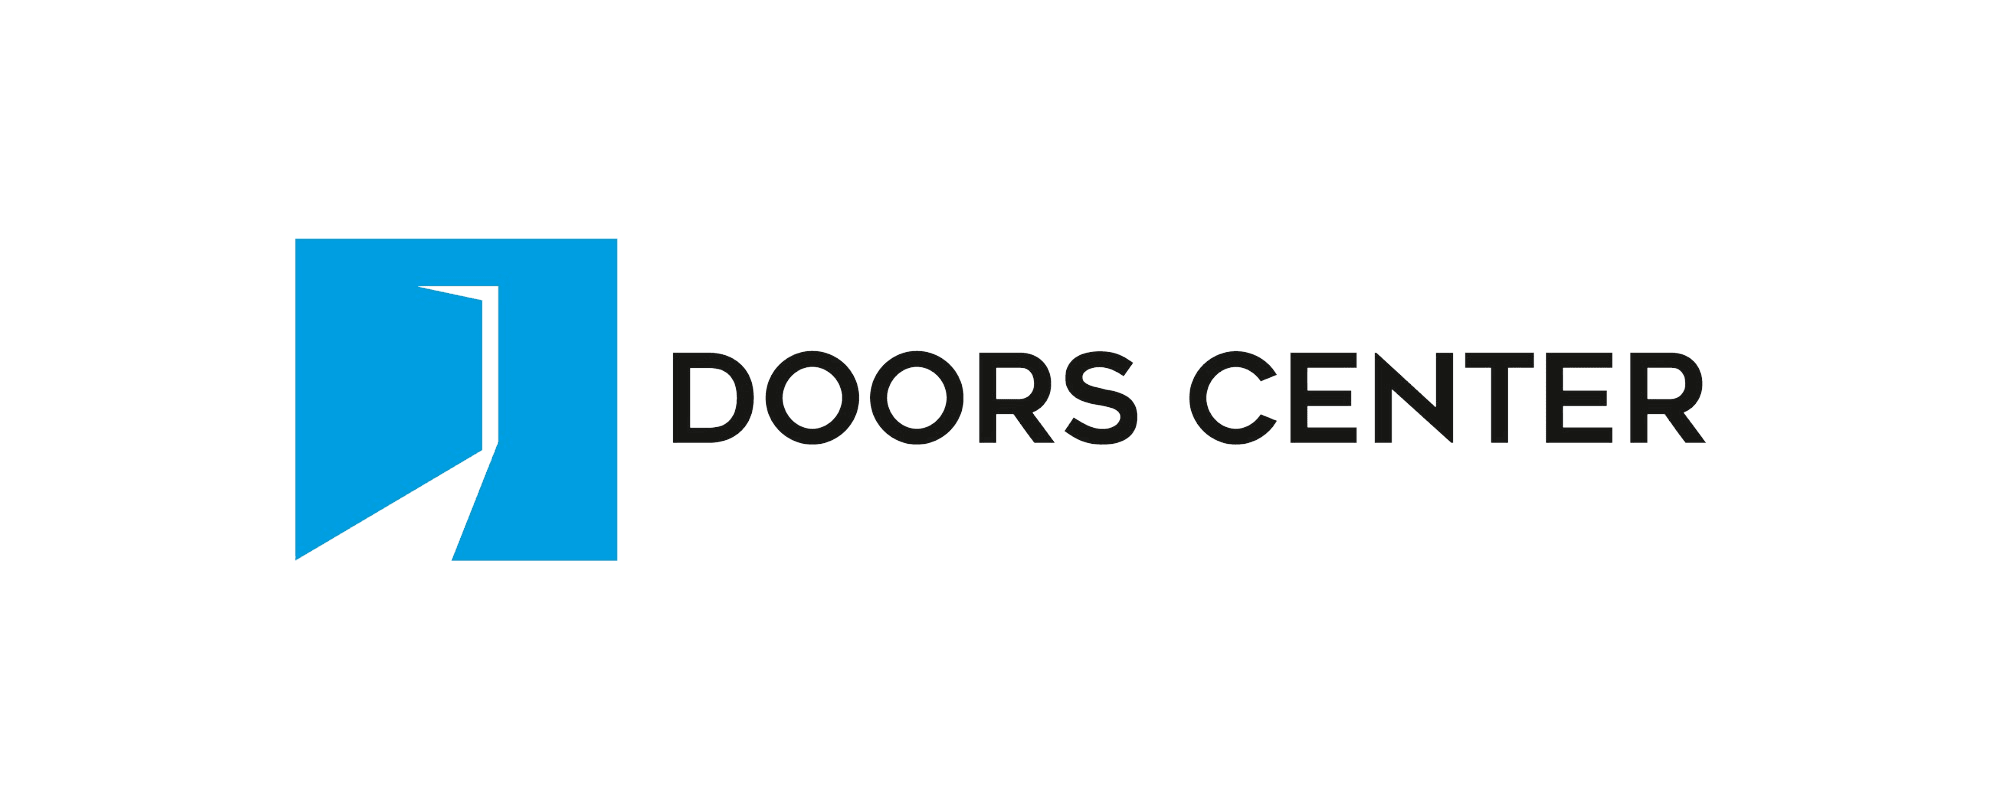 Doors_Center_Horizontal_Logo